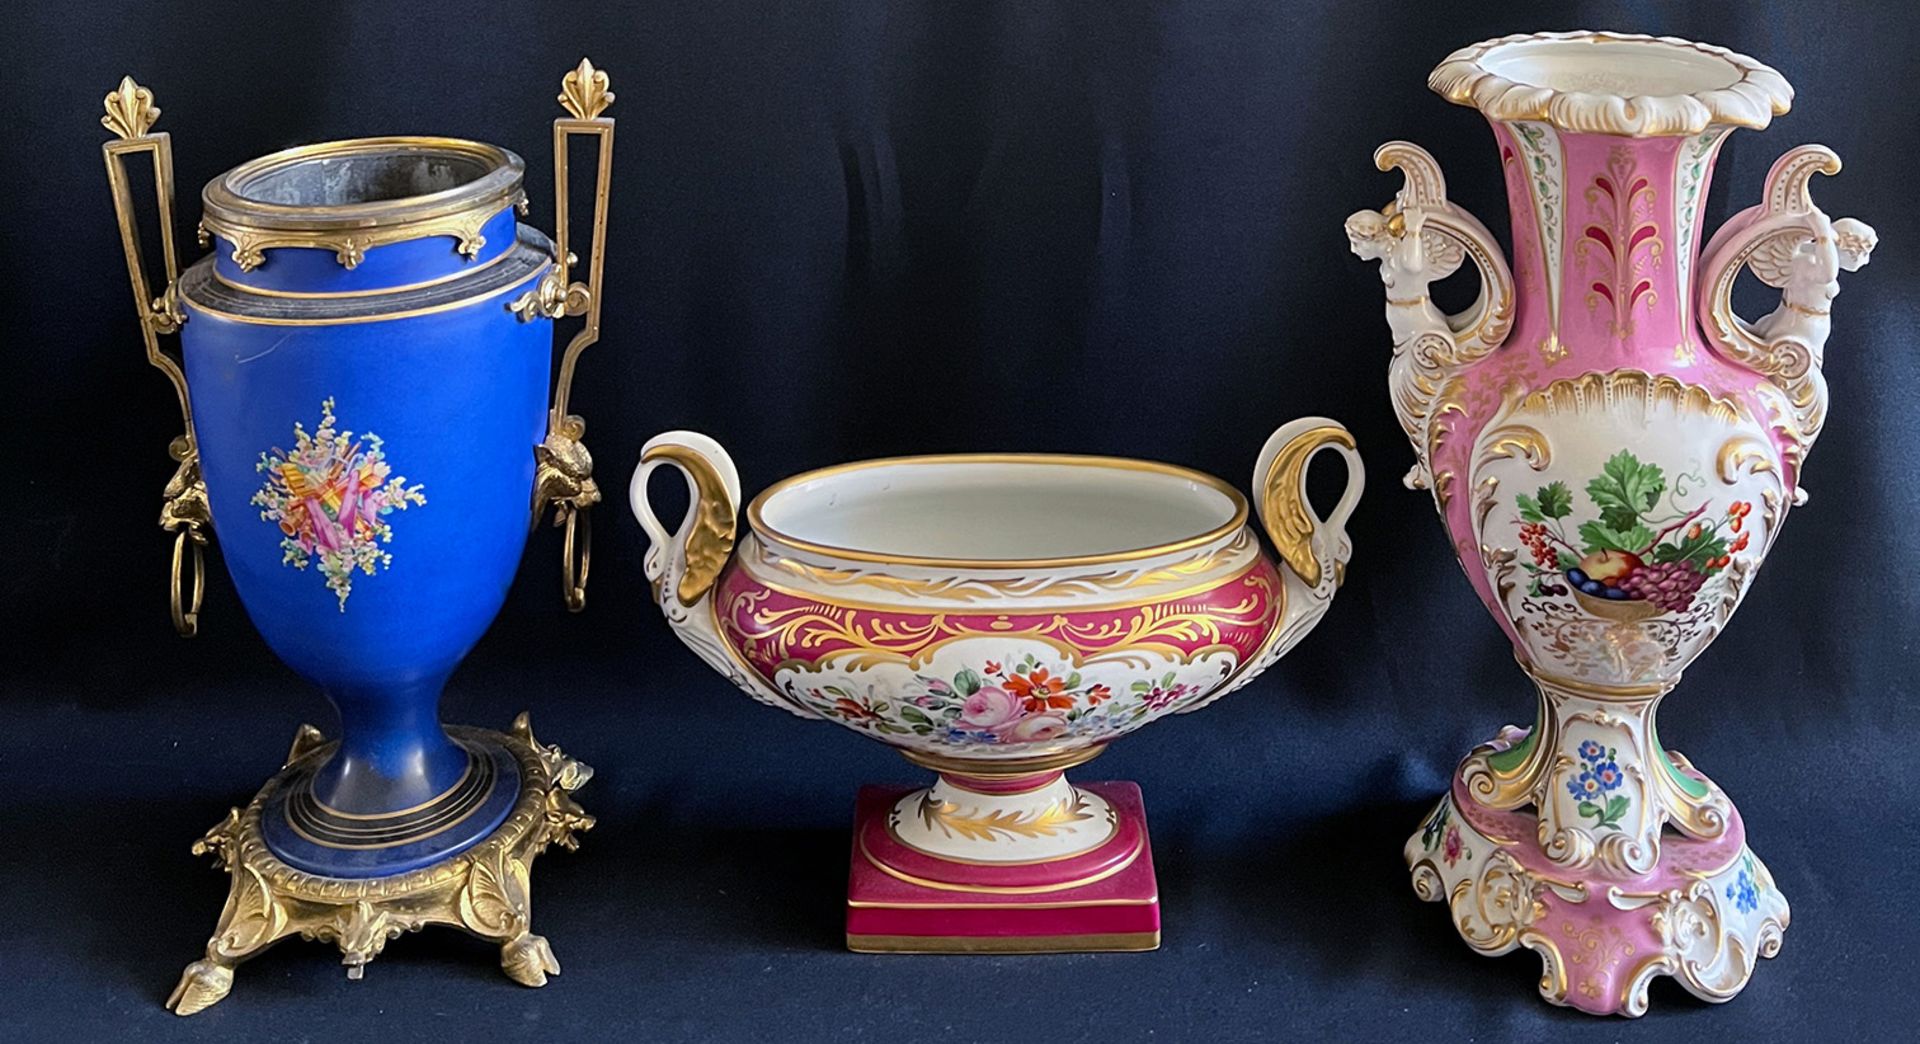 3 Sammlerobjekte, Porzellan, 19. Jh., bzw um 1900, Altersspuren: blaugrundige Vase mit Darstellung - Bild 5 aus 5